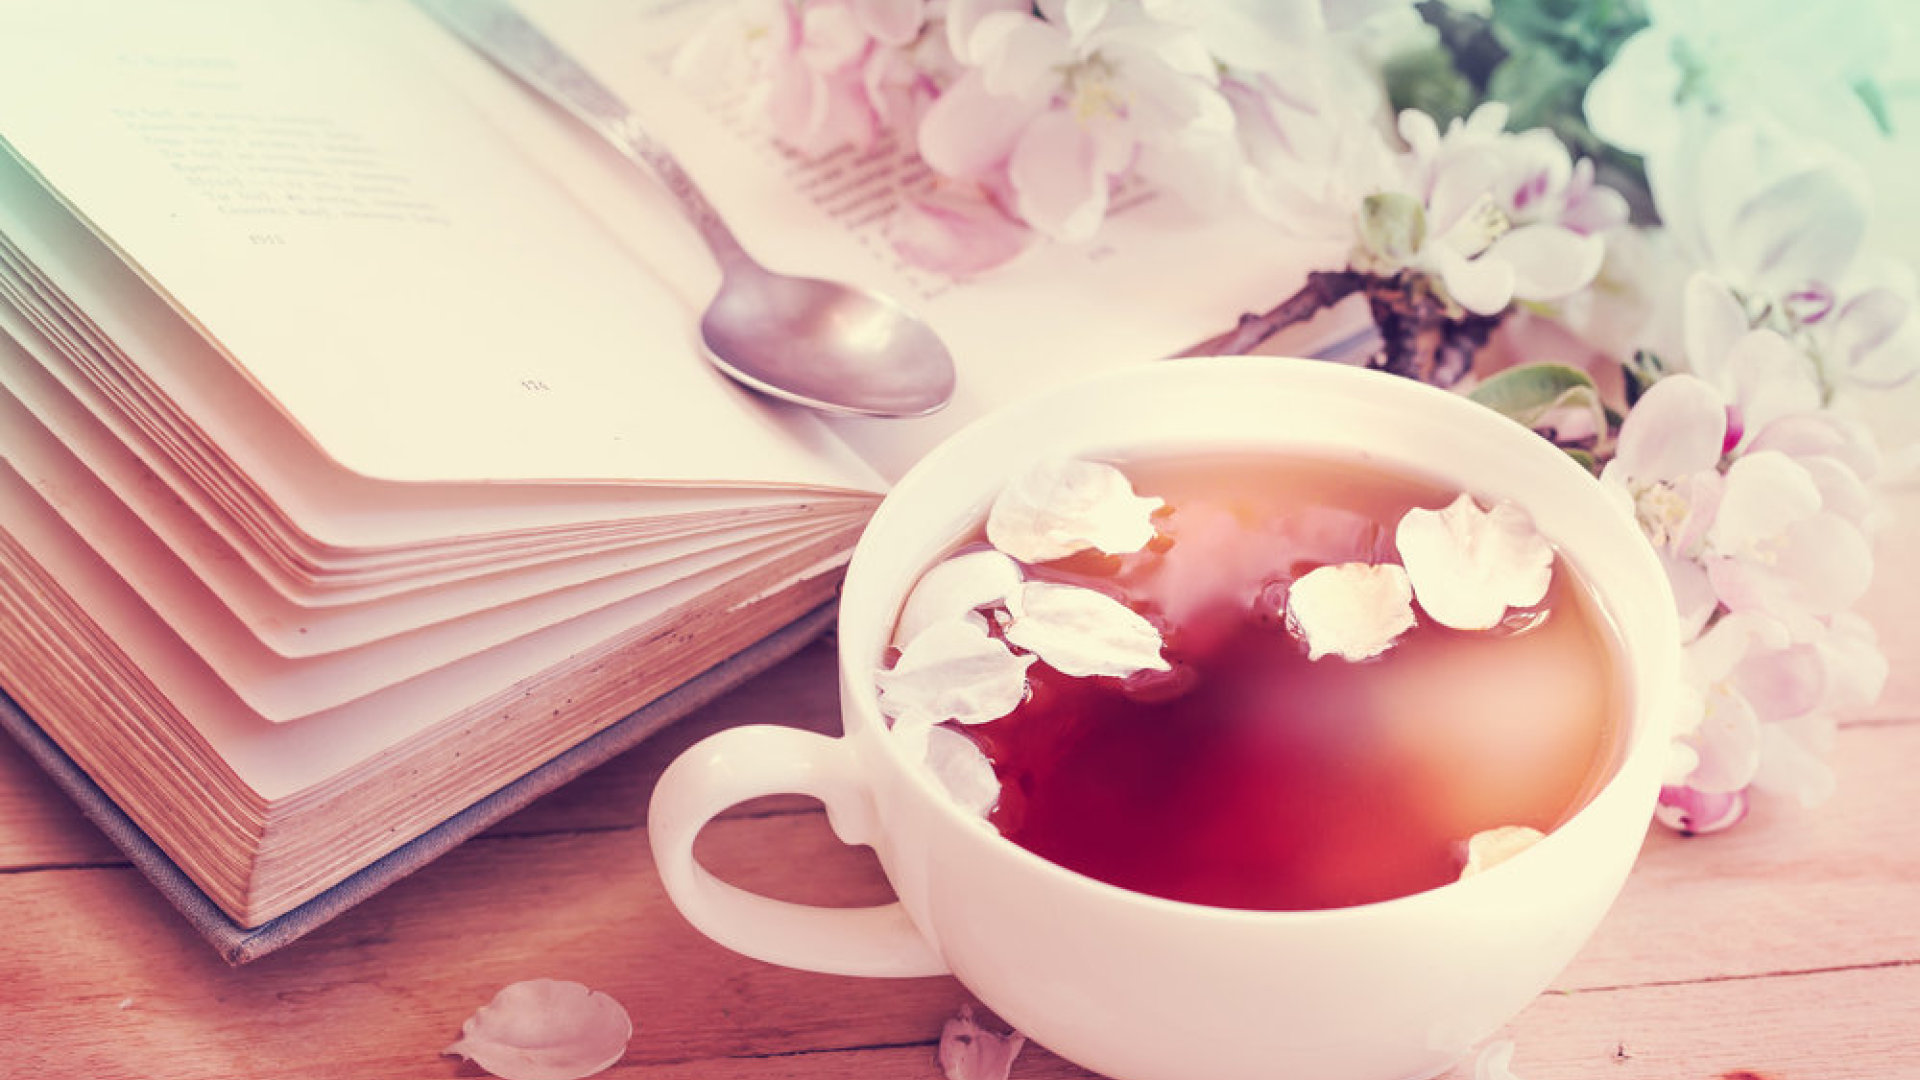 kaip arbata gali numesti svorį spalvos svorio netekimas vizag